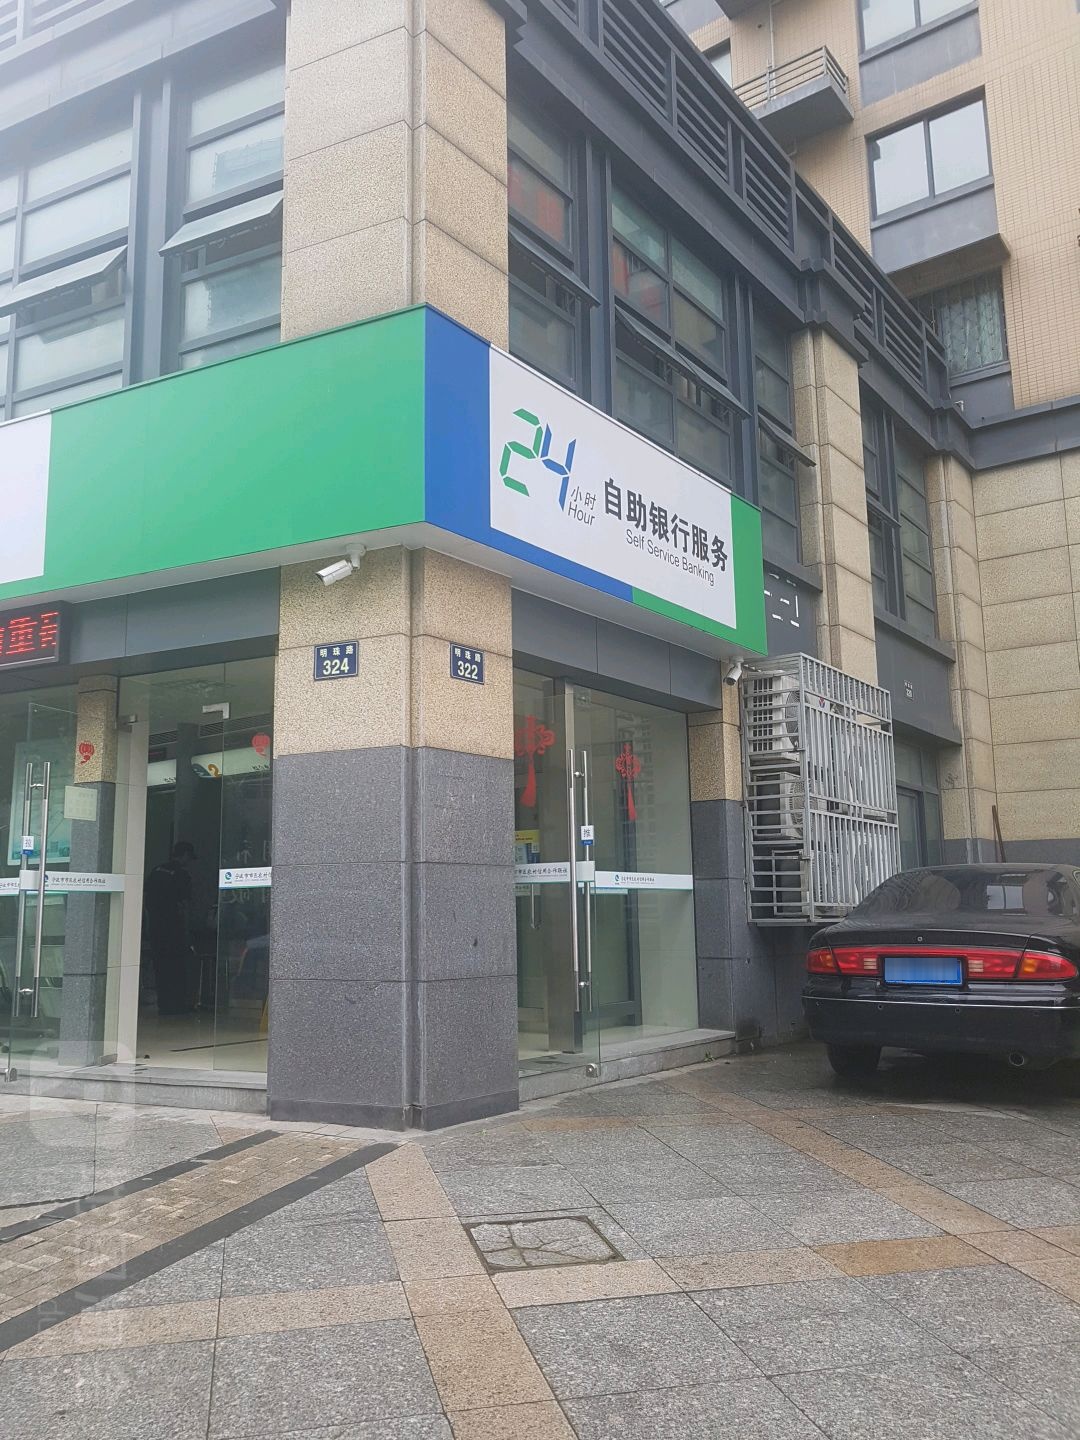 宁波市市区农村信用合作联社24小时自助银行。服务(朱桑分社)